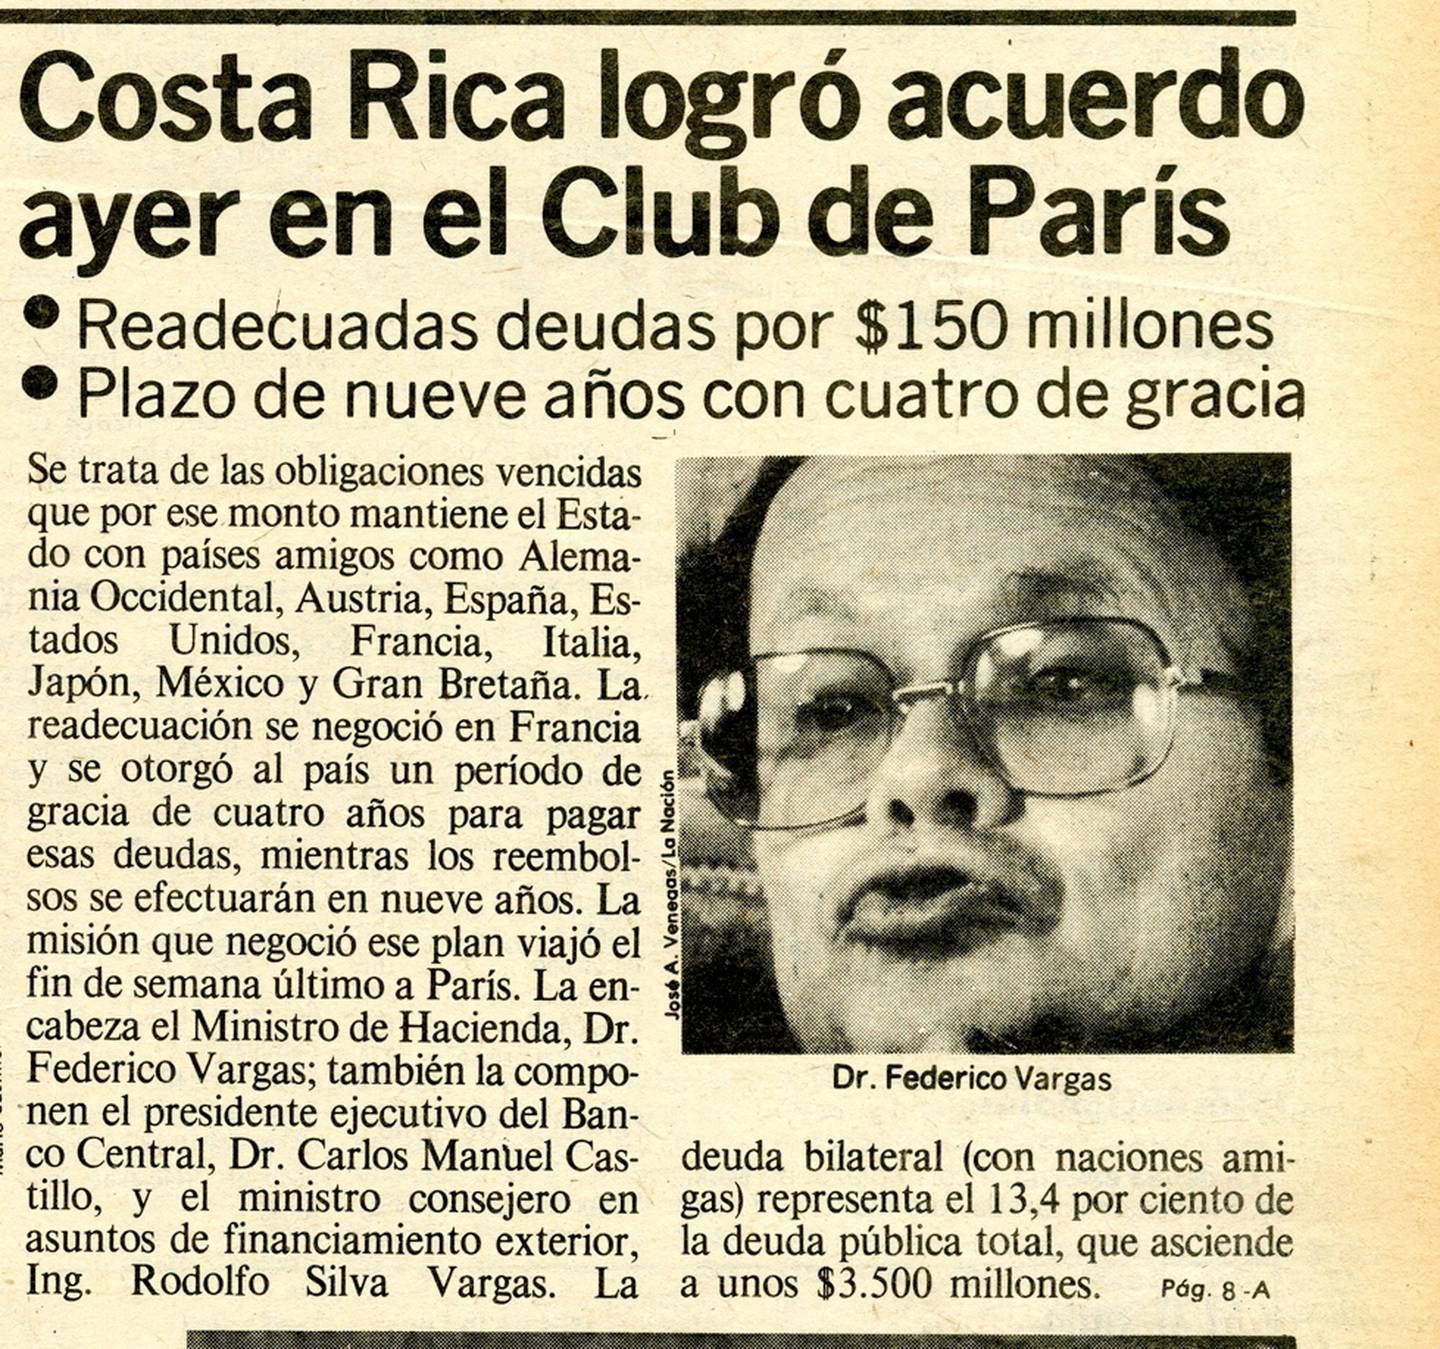 Los acuerdos con los países amigos en el Club de París fueron algunas de las mejores alternativas que pudo conseguir Costa Rica al inicio de las negociaciones, cuando la postura de los acreedores era más severa.